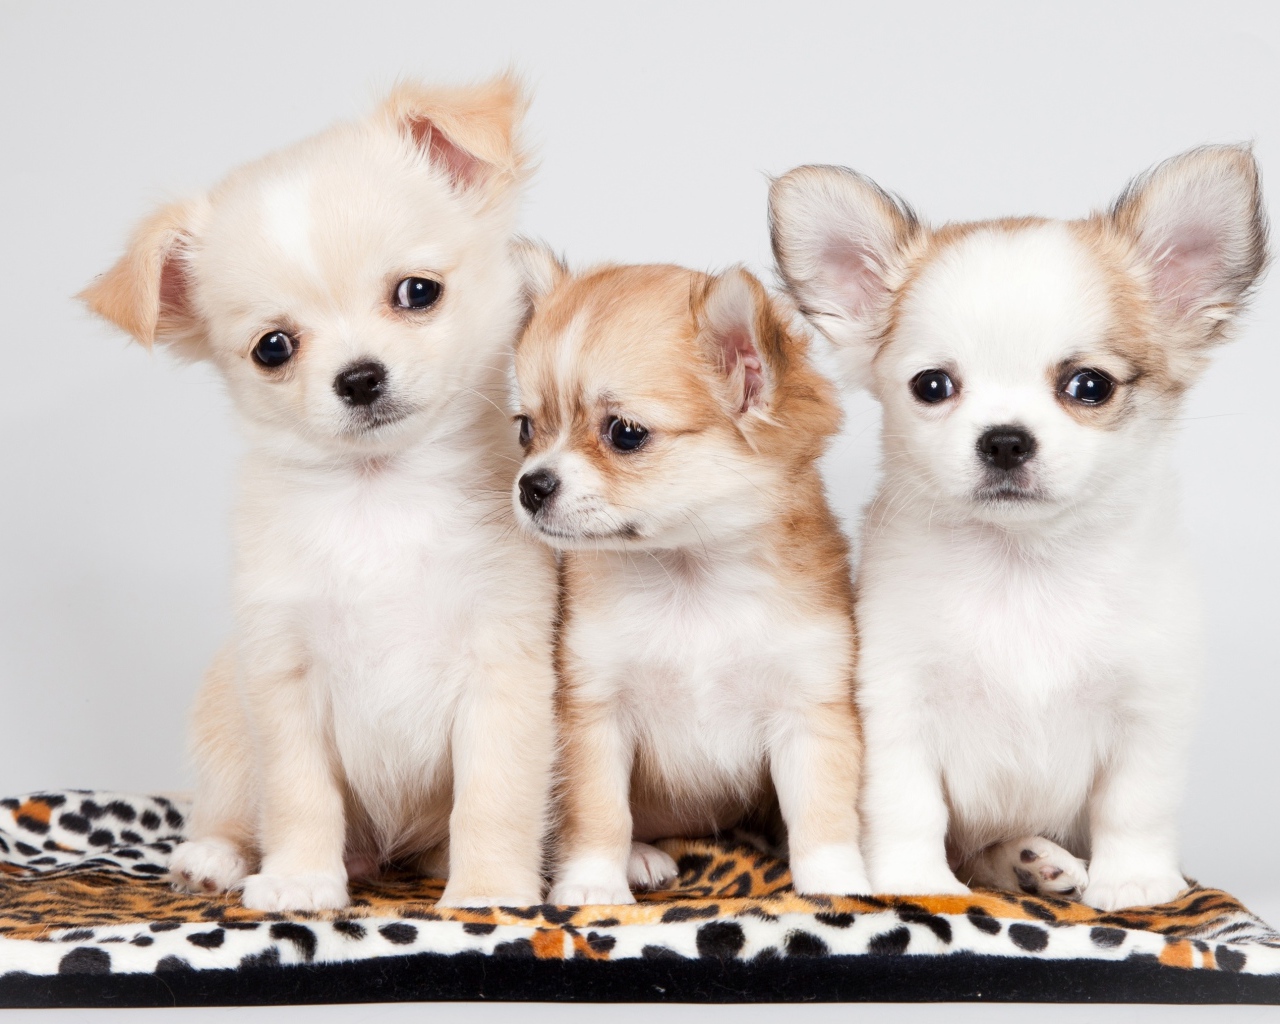 Три маленьких забавных щенка чихуахуа